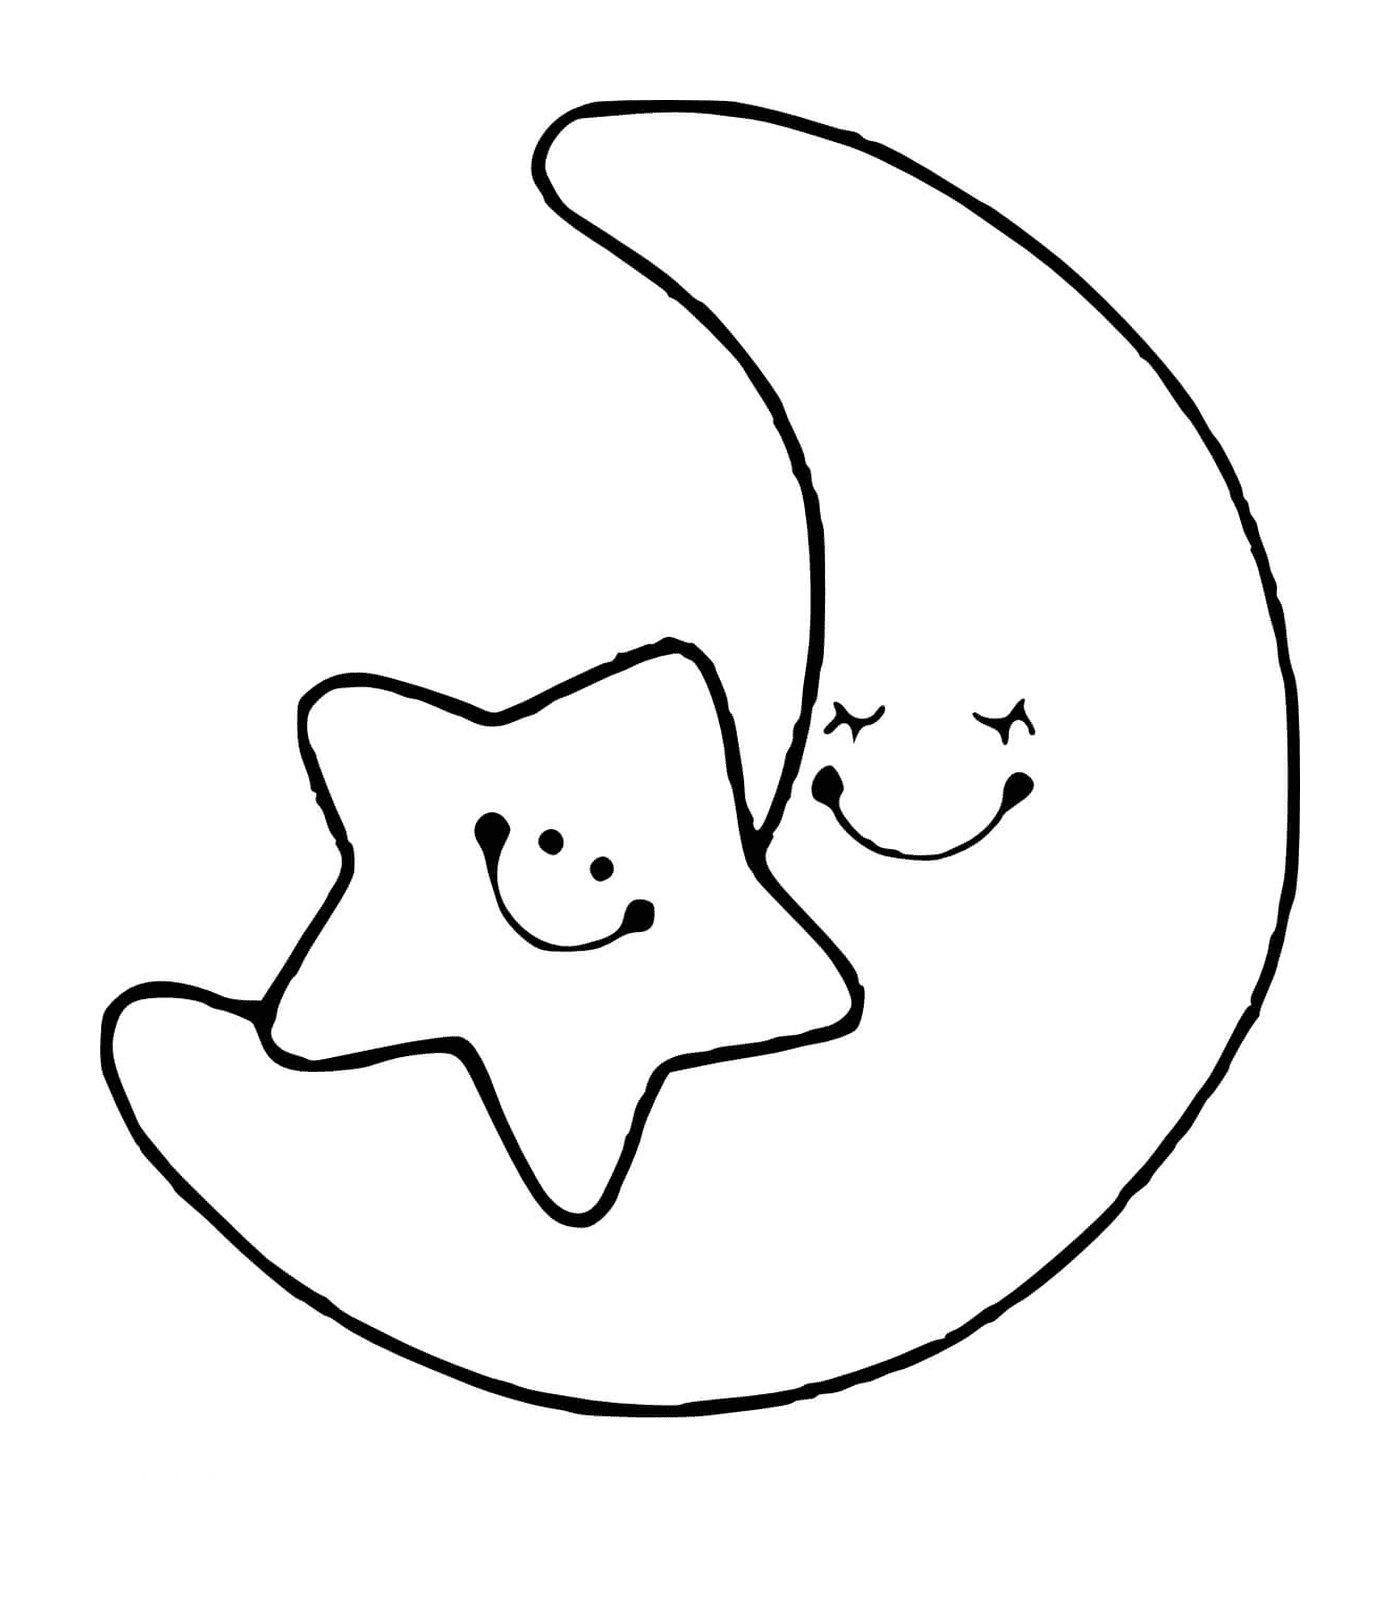  Estrela e Lua 